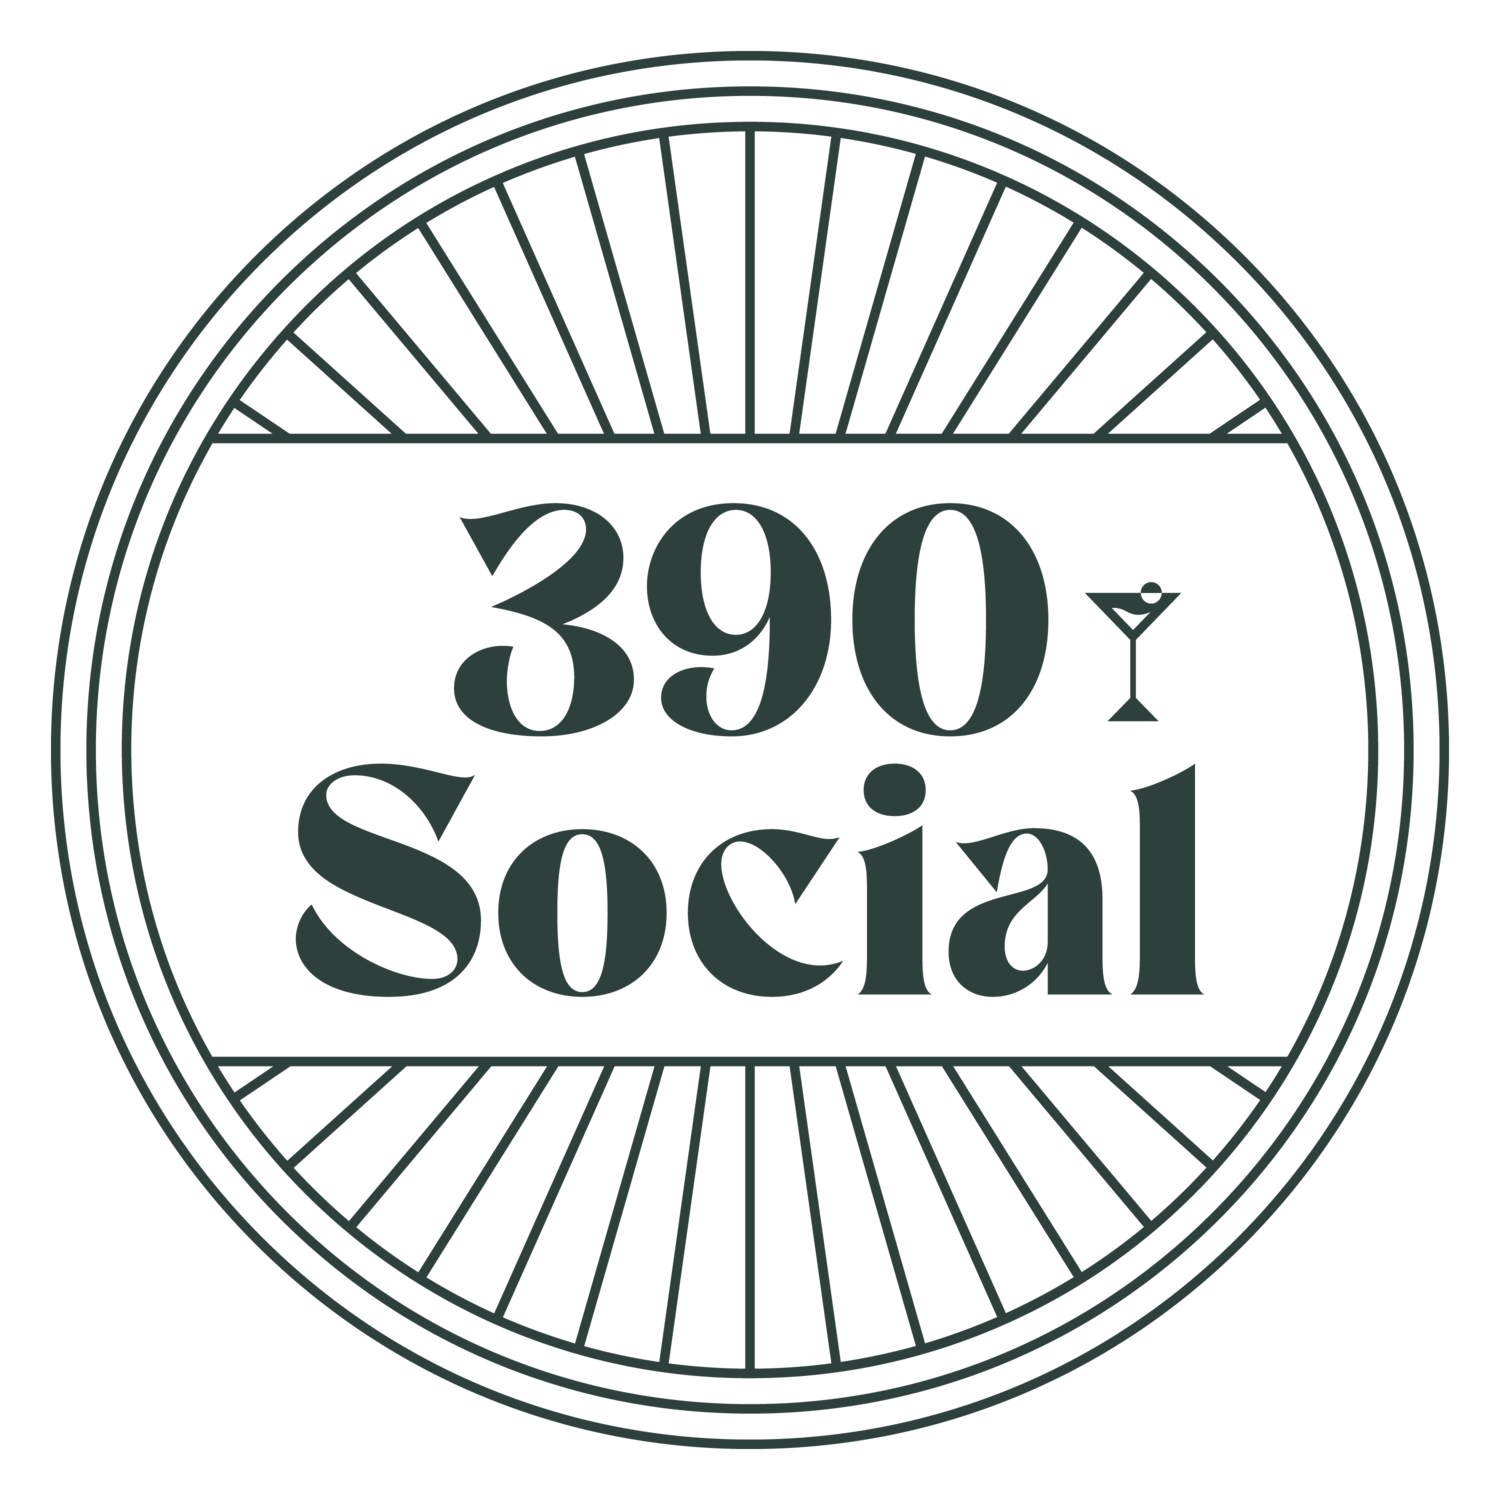 390 Social